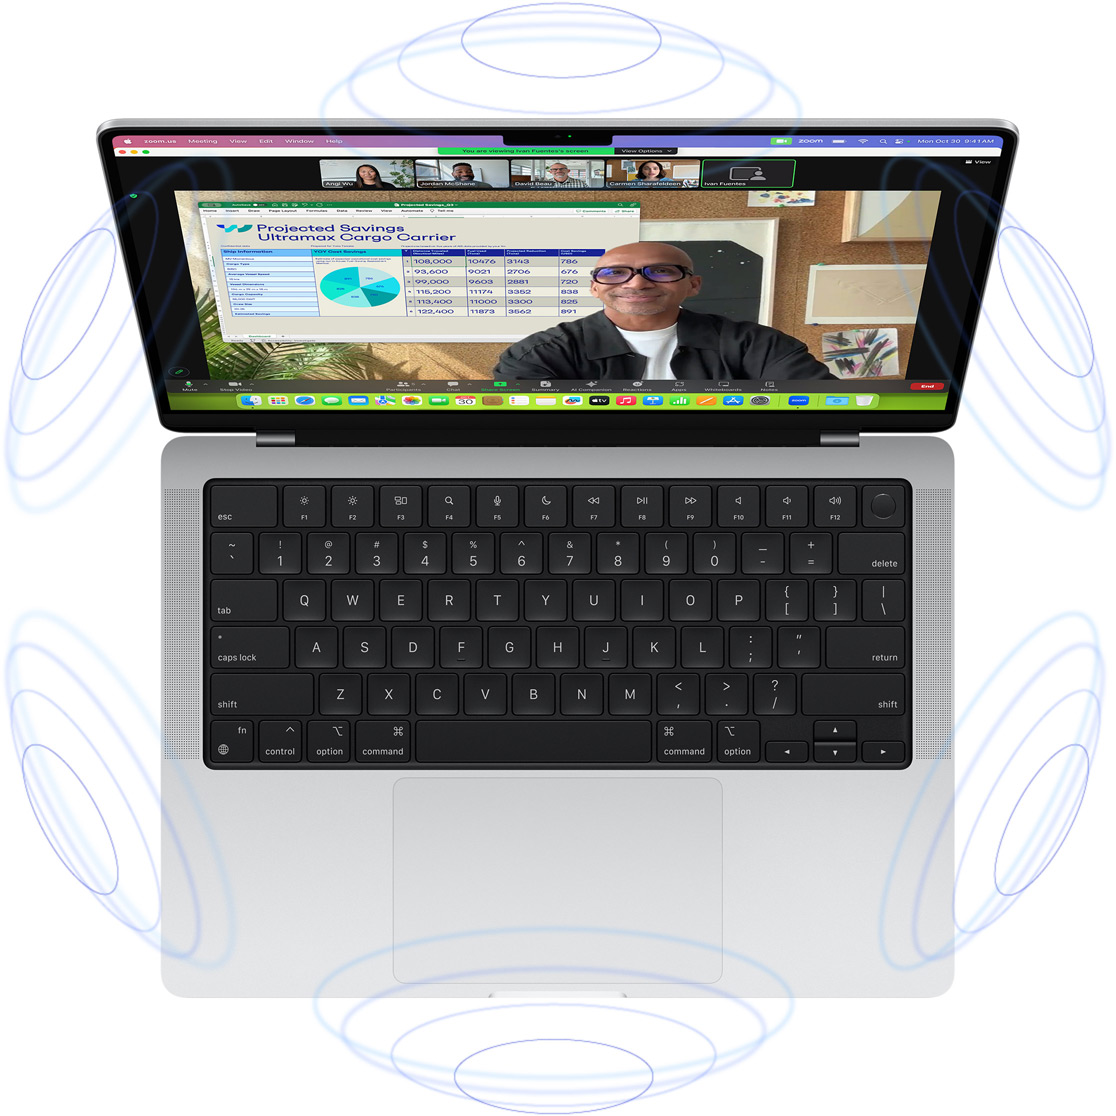 Et FaceTime-videoopkald på MacBook Pro omgivet af blå cirkler, der illustrerer 3D-følelsen af rumlig lyd